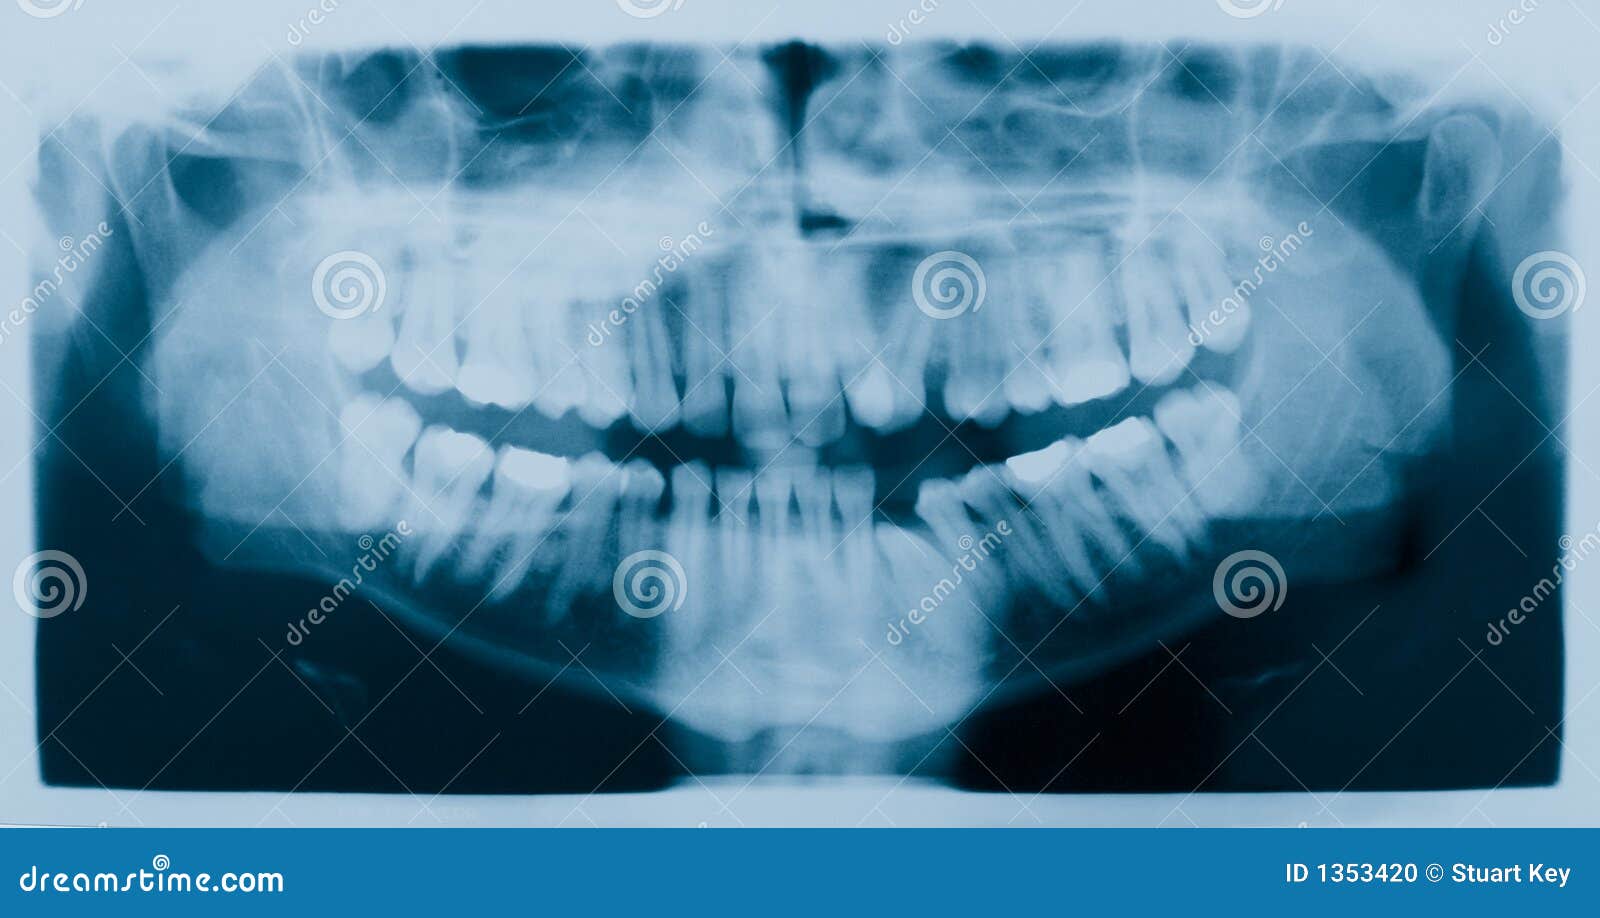 dental xray (x-ray)